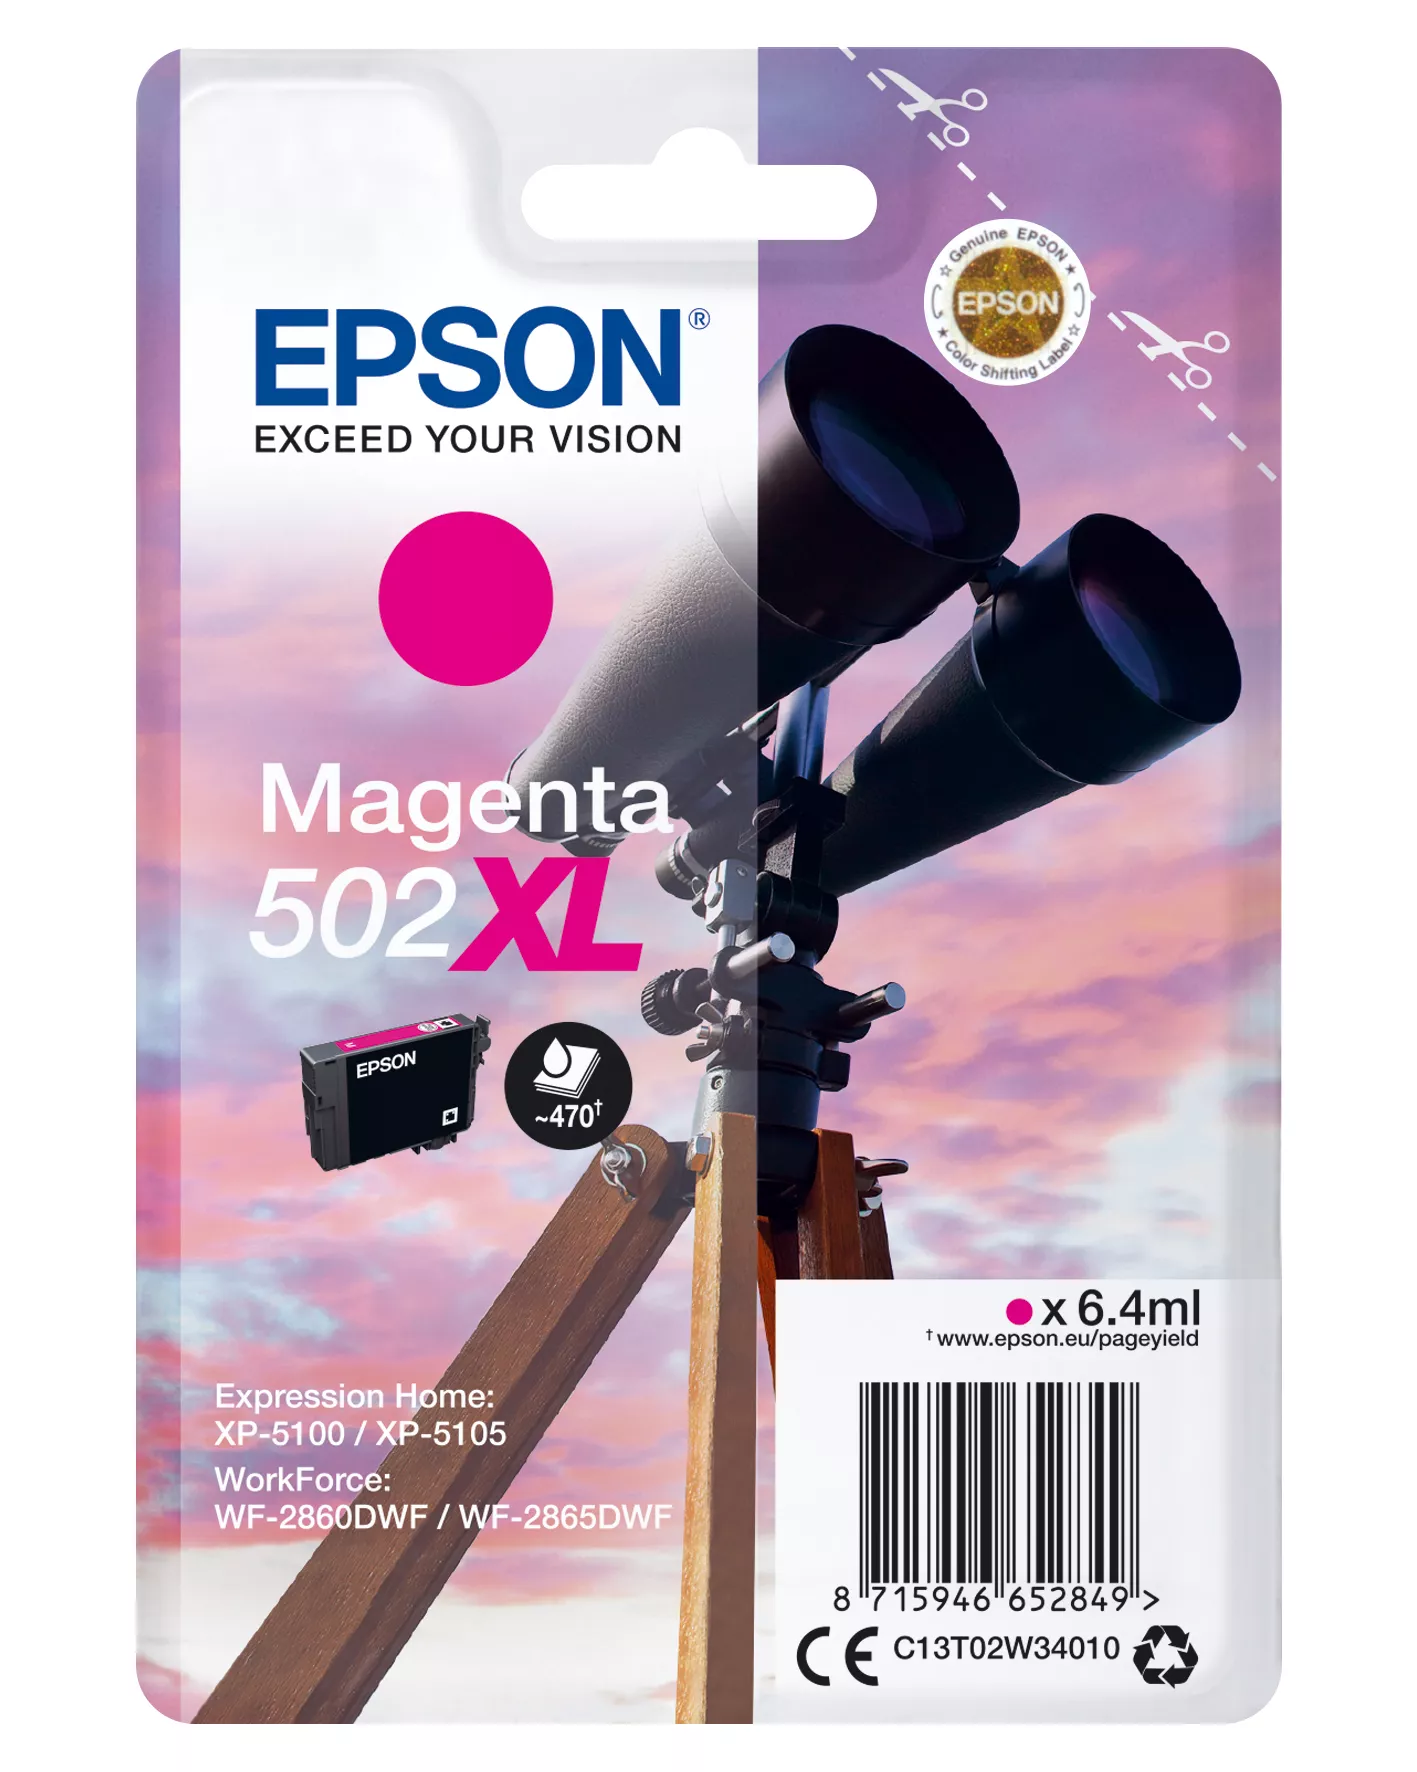 Achat EPSON Singlepack Magenta 502XL Ink et autres produits de la marque Epson